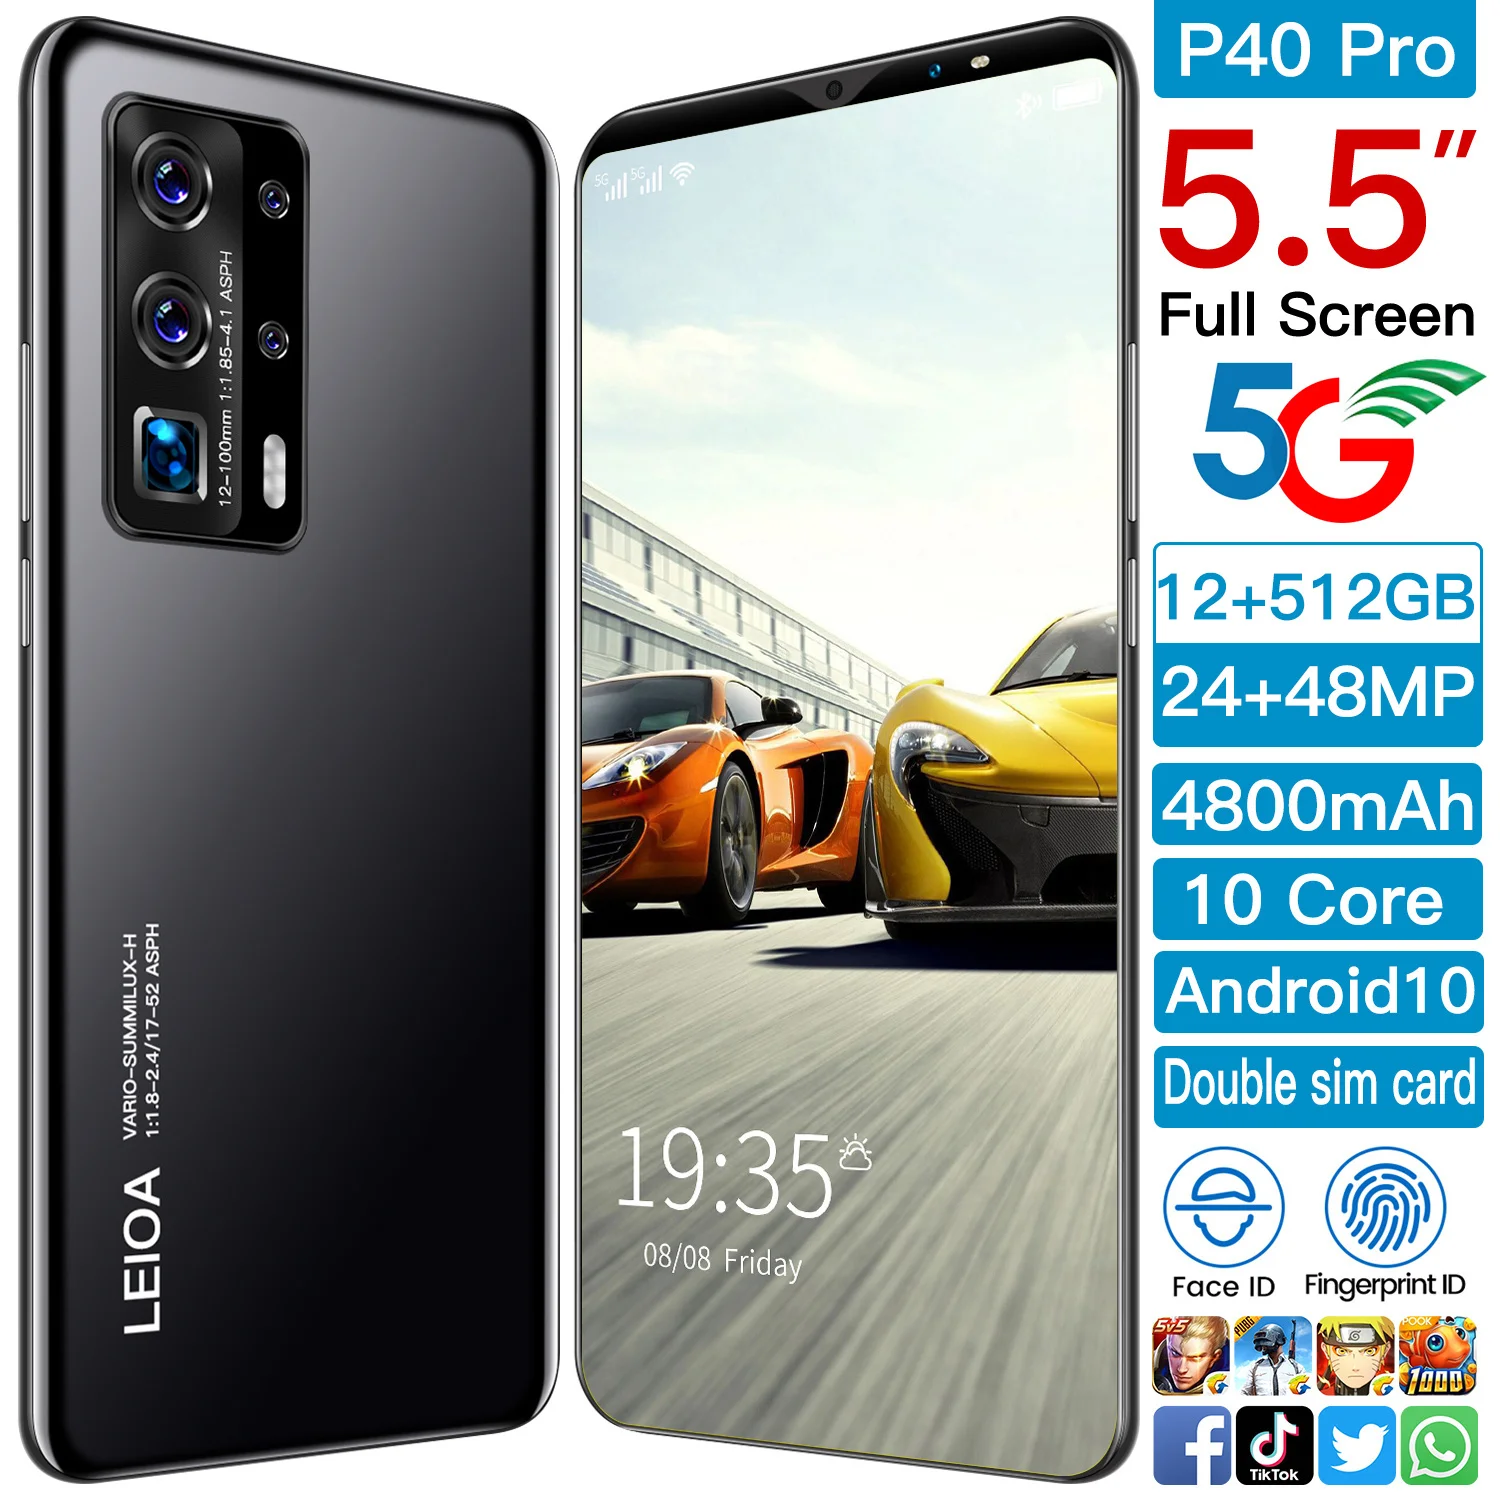 

Мобильный телефон P40 Pro, 2021 дюйма, сканер отпечатков пальцев и лица, 5,5 мАч, Android 4800, две SIM-карты, 10 ядер, 24 + 48 Мп, MTK6763, мини смартфон, 10,0